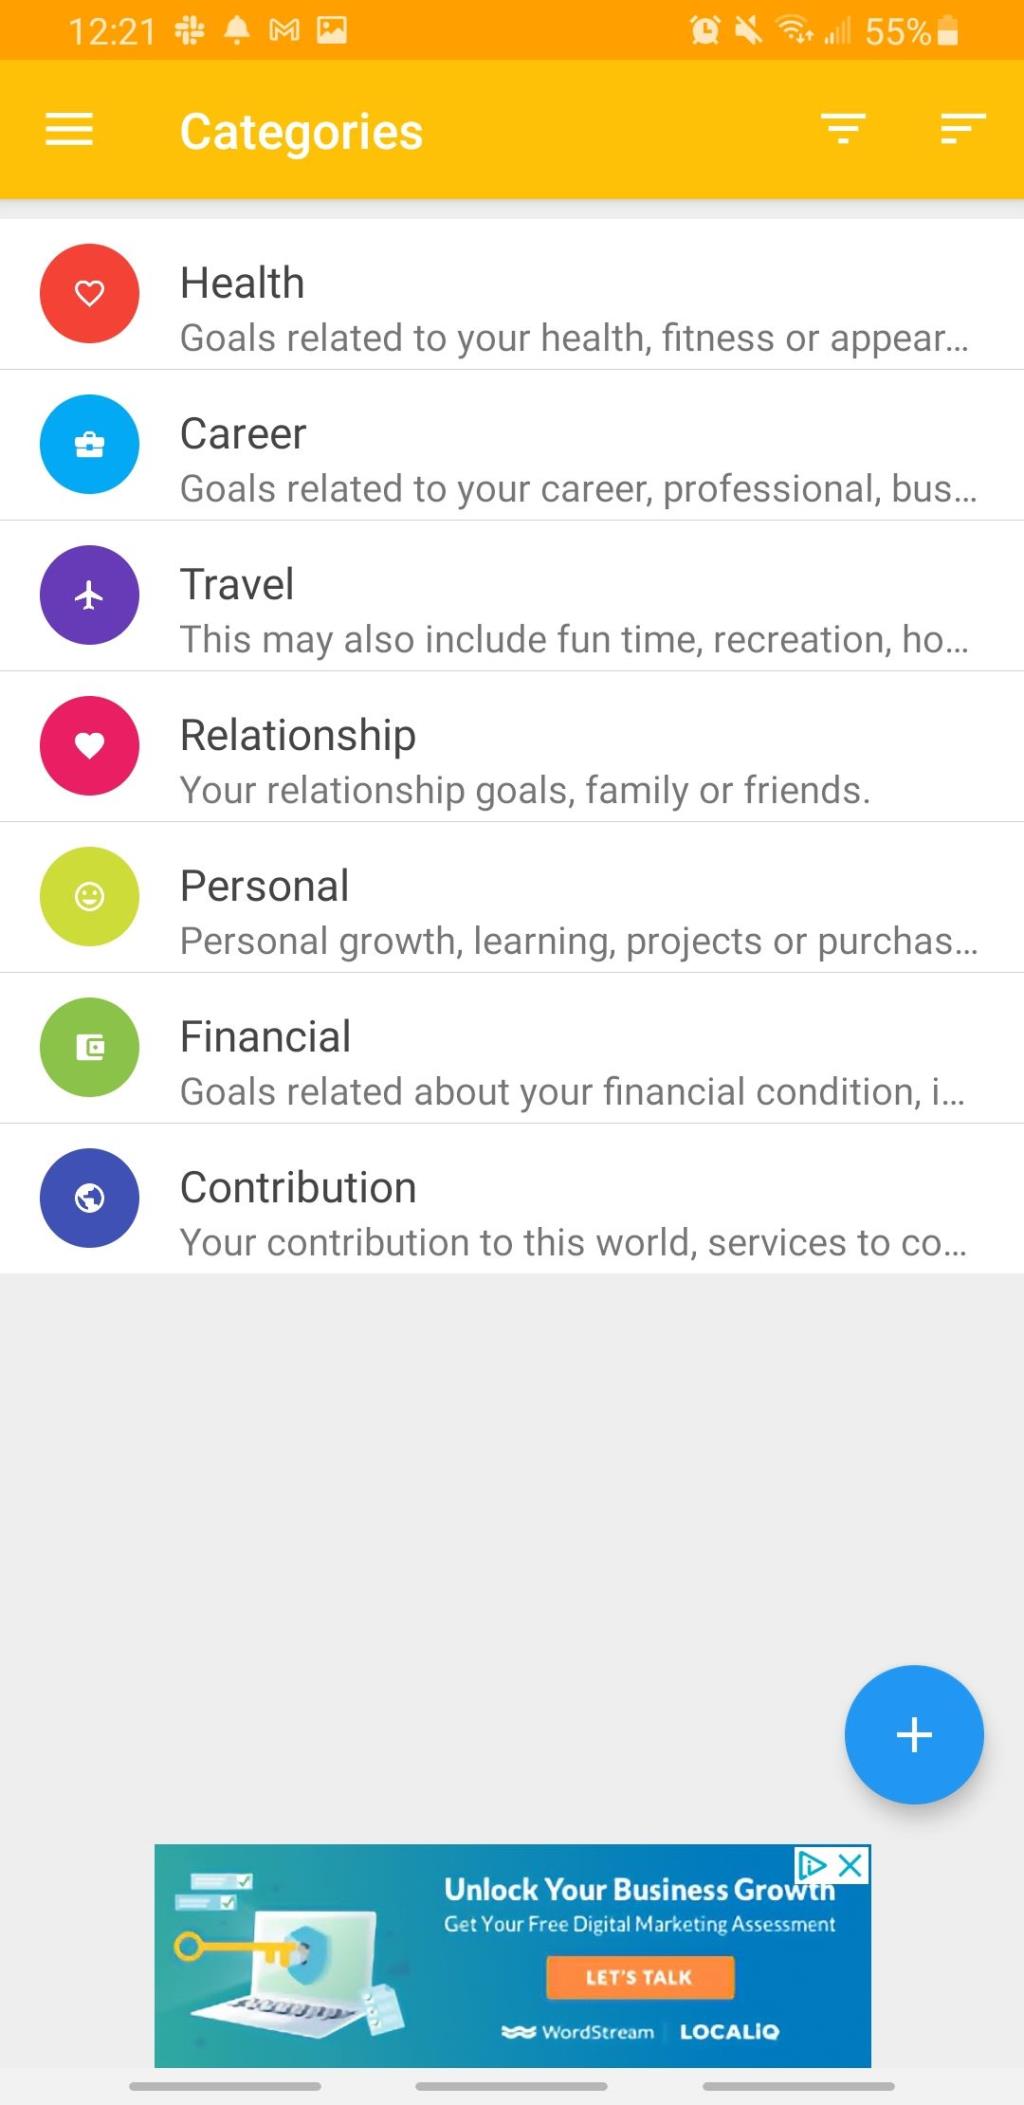 Le 5 migliori app per la lista dei desideri per Android per raggiungere i tuoi obiettivi